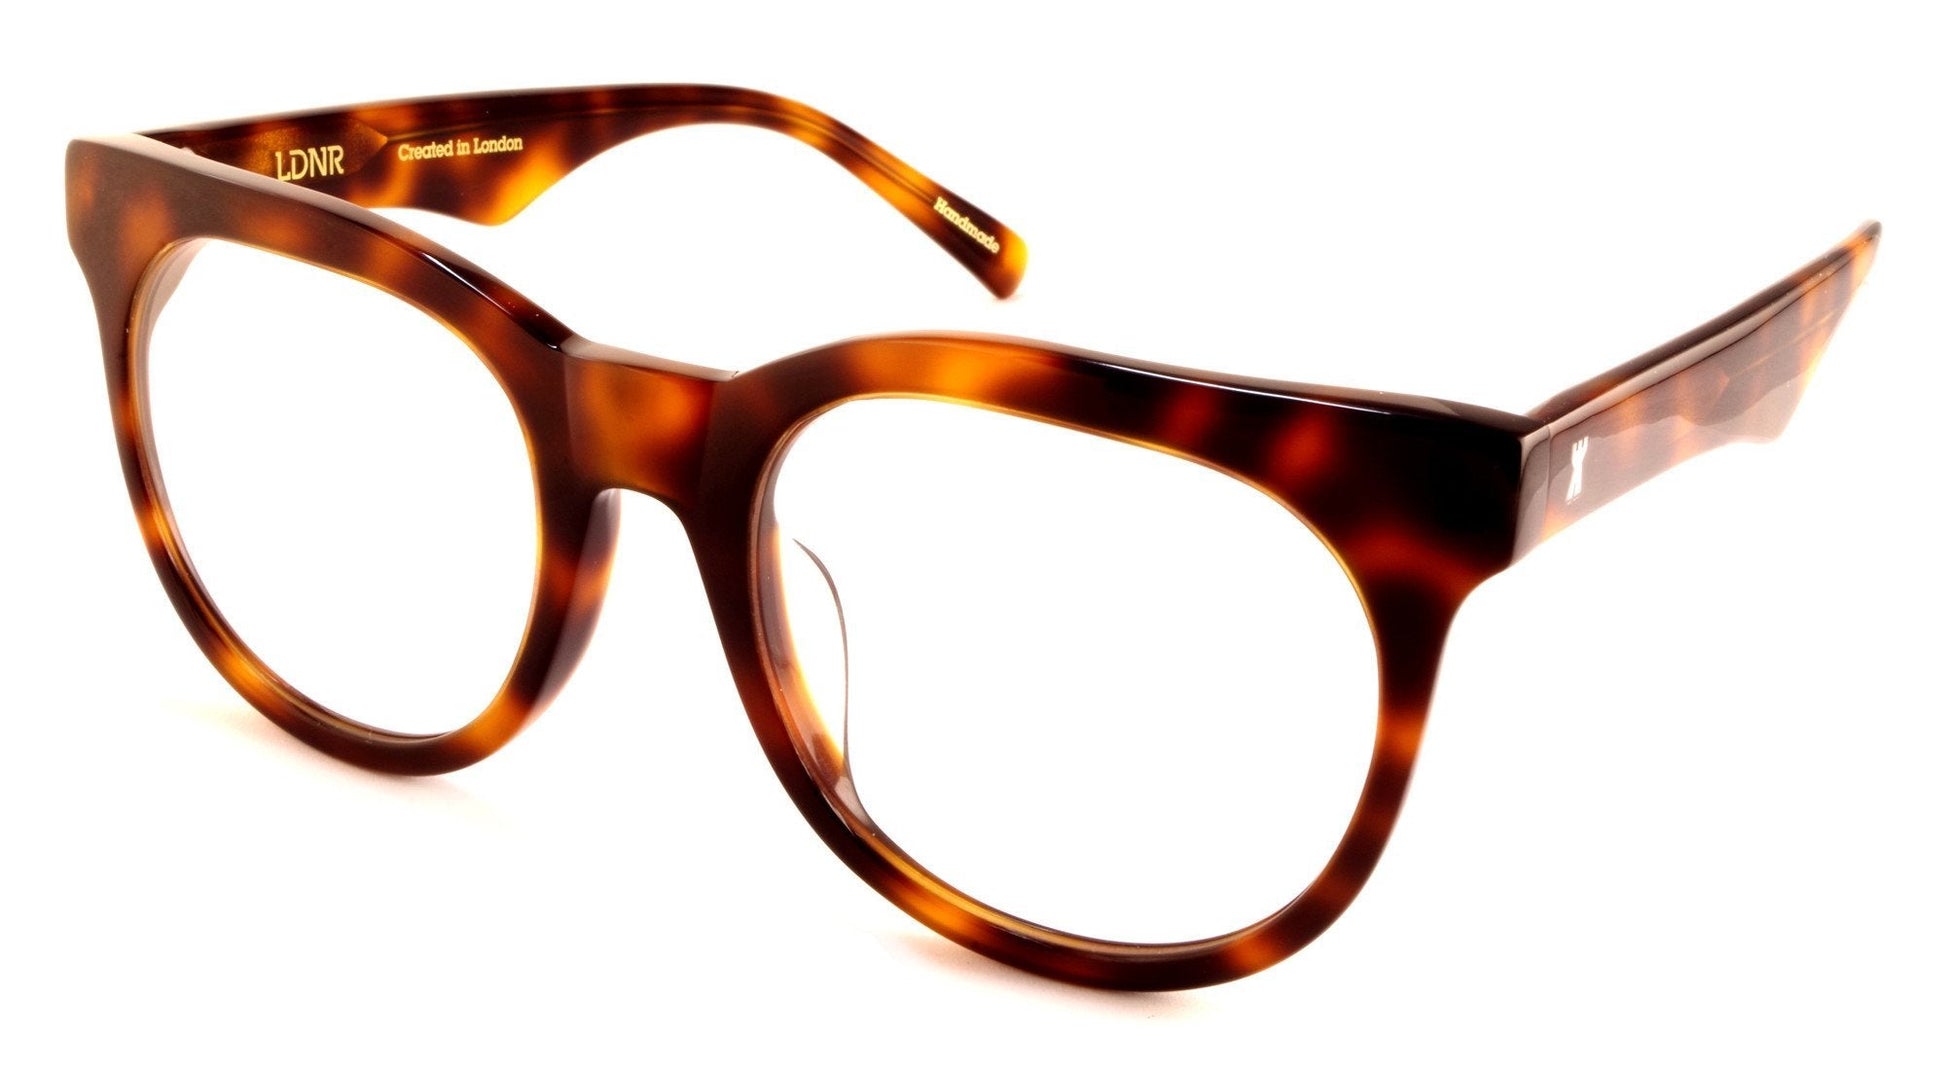 LDNR Berwick 003 Glasses (Tortoiseshell)